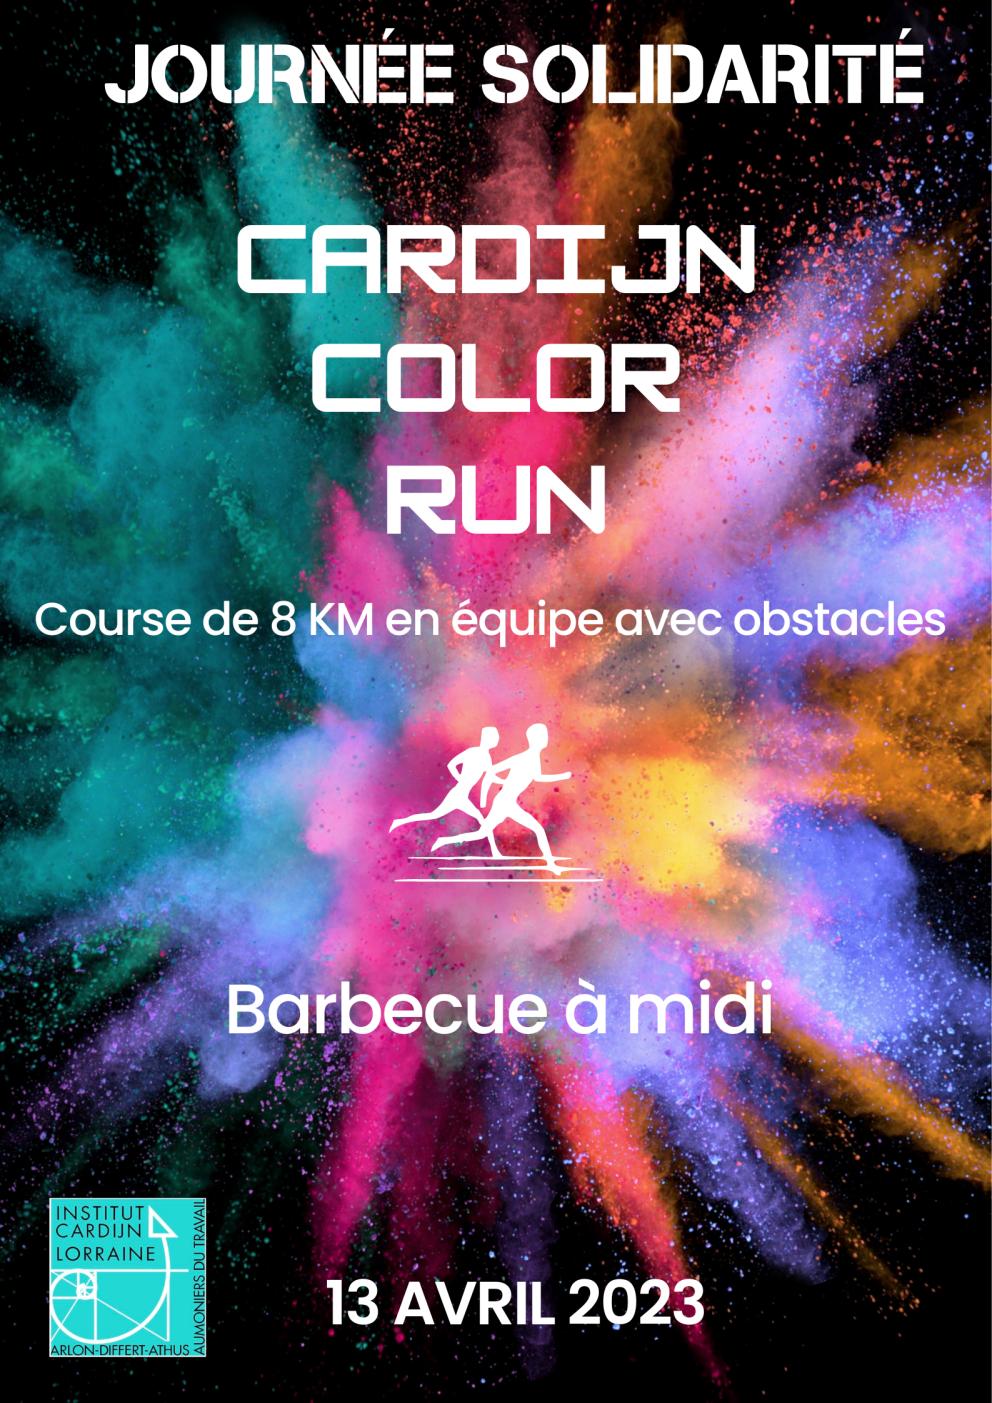 Cardijn Color Run